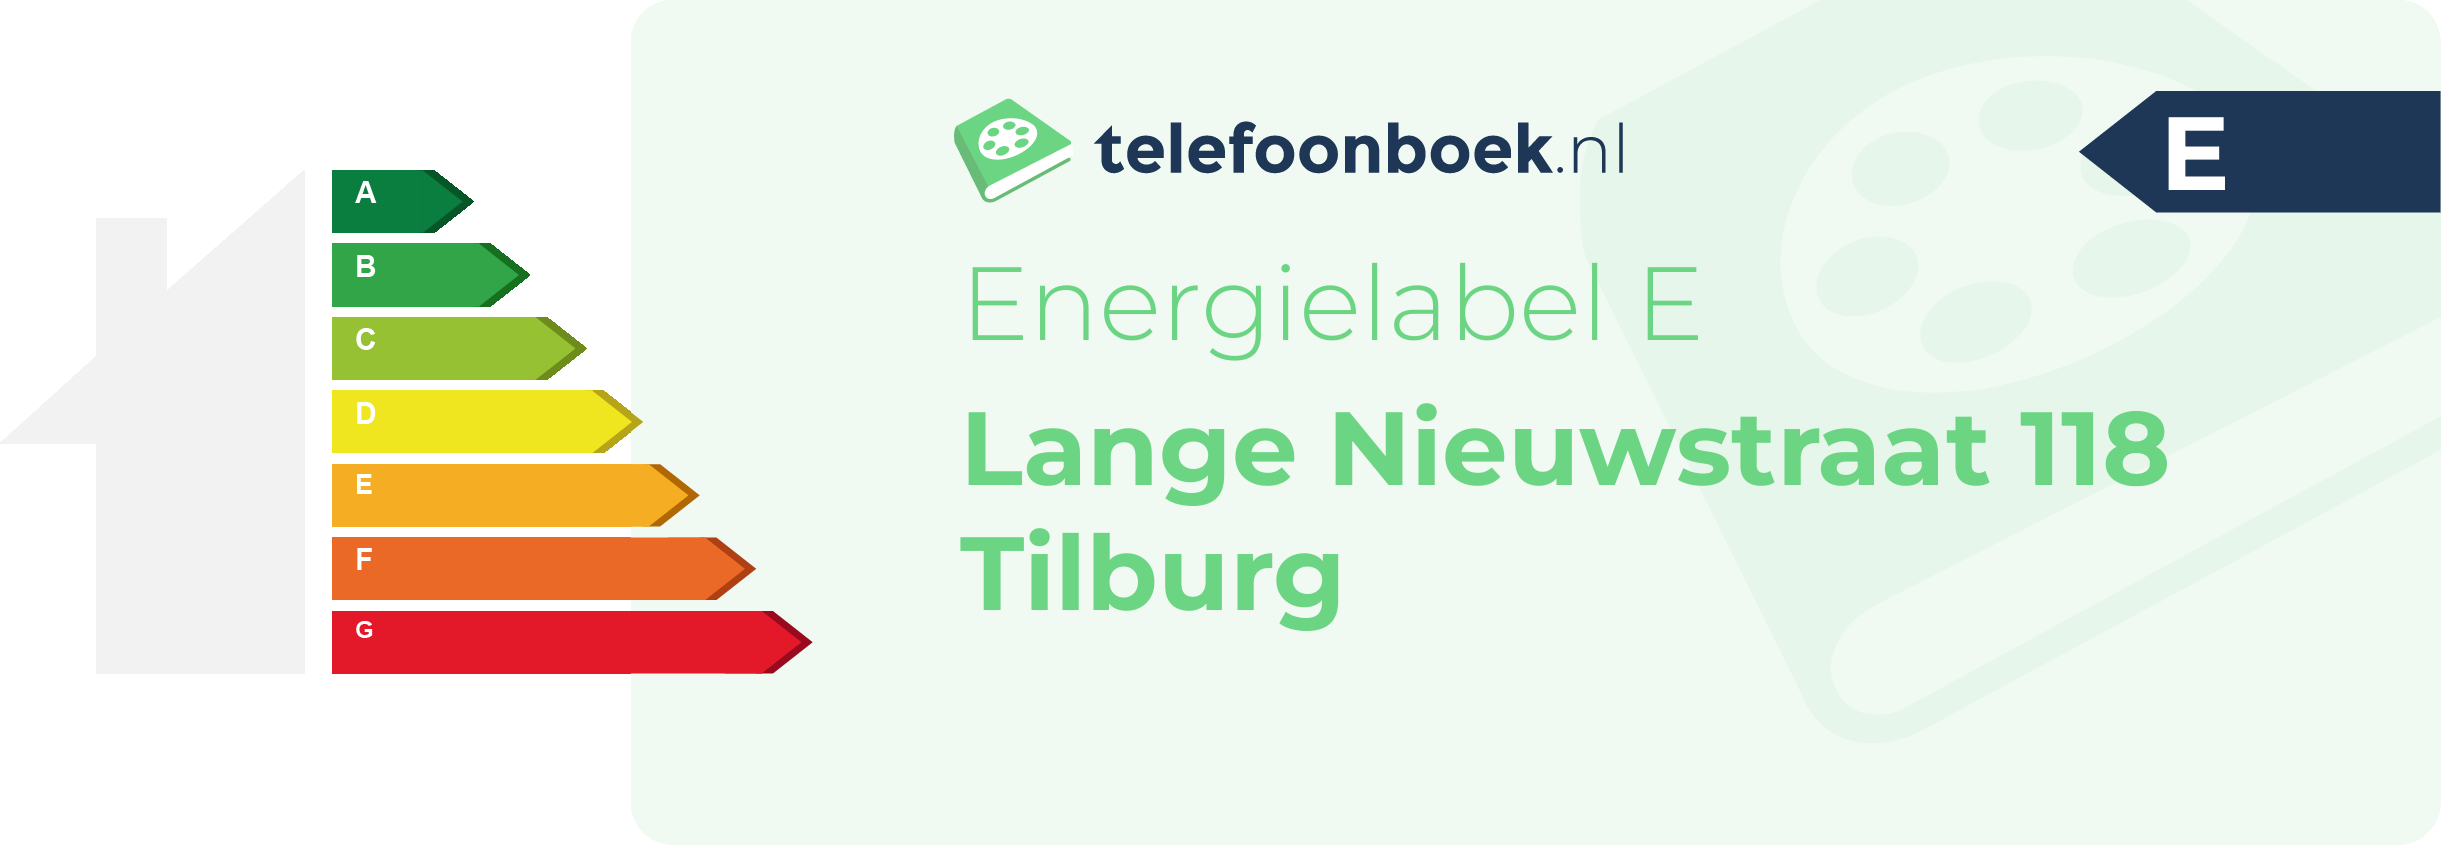 Energielabel Lange Nieuwstraat 118 Tilburg